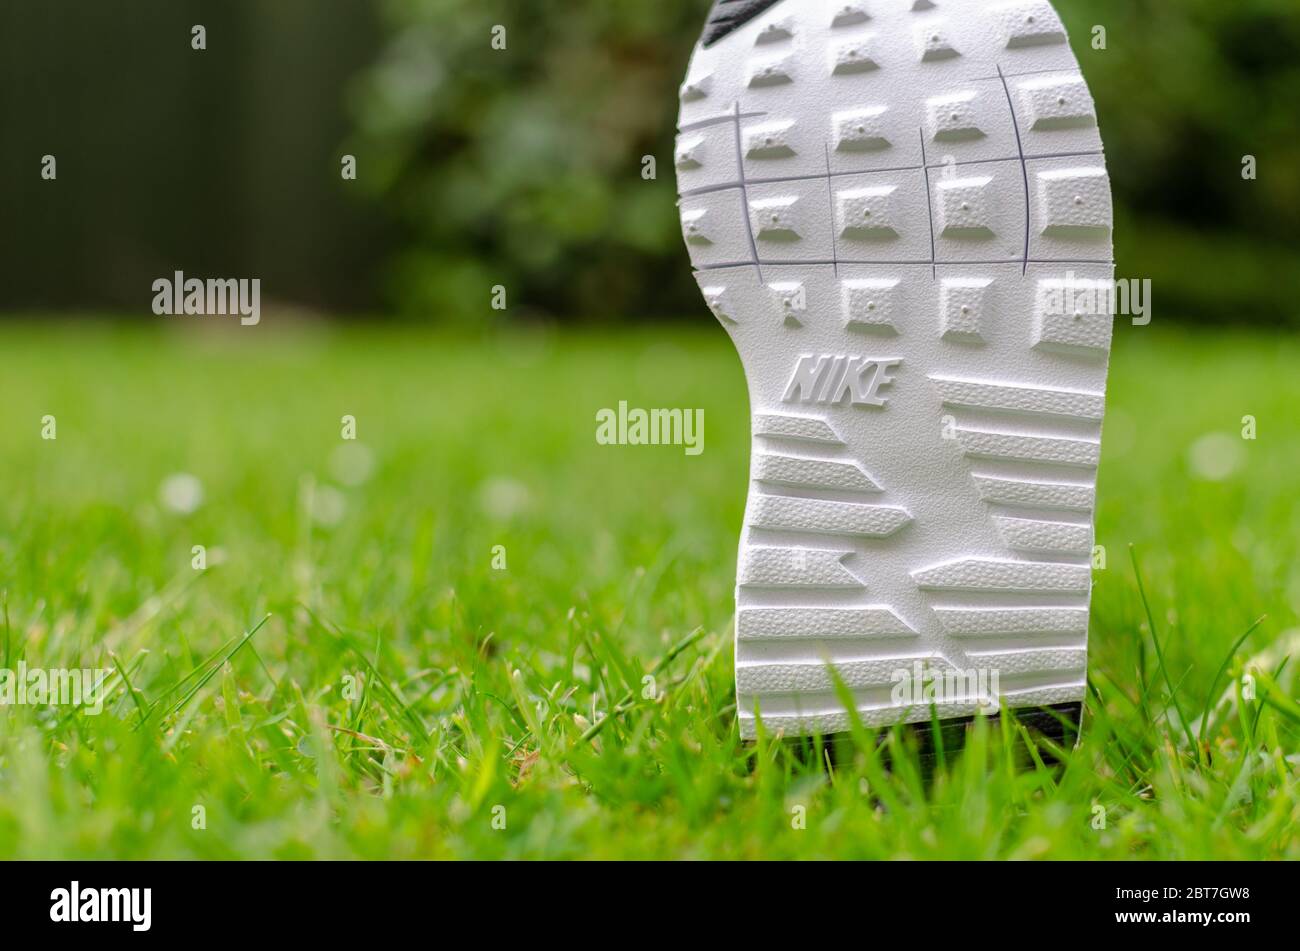 La photo rapprochée de la semelle de training Air Nike pour enfant sur l'herbe vibrante. Le champ de vision peu profond a été utilisé pour l'imagerie. Banque D'Images